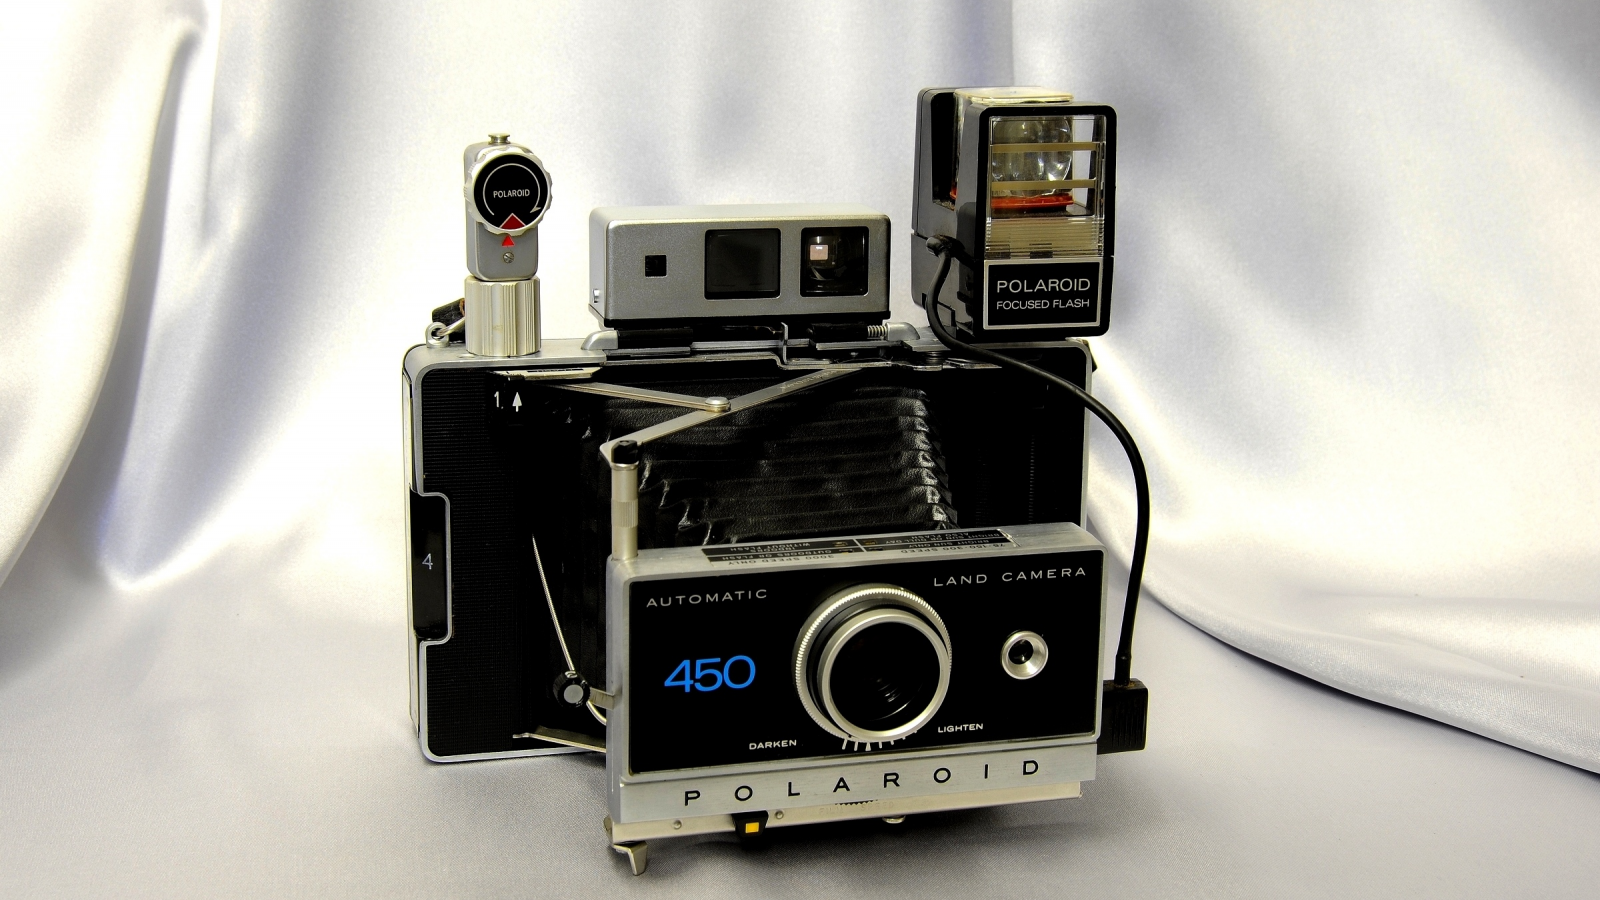 вспышка, автоматическая камера, polaroid 450, видоискатель